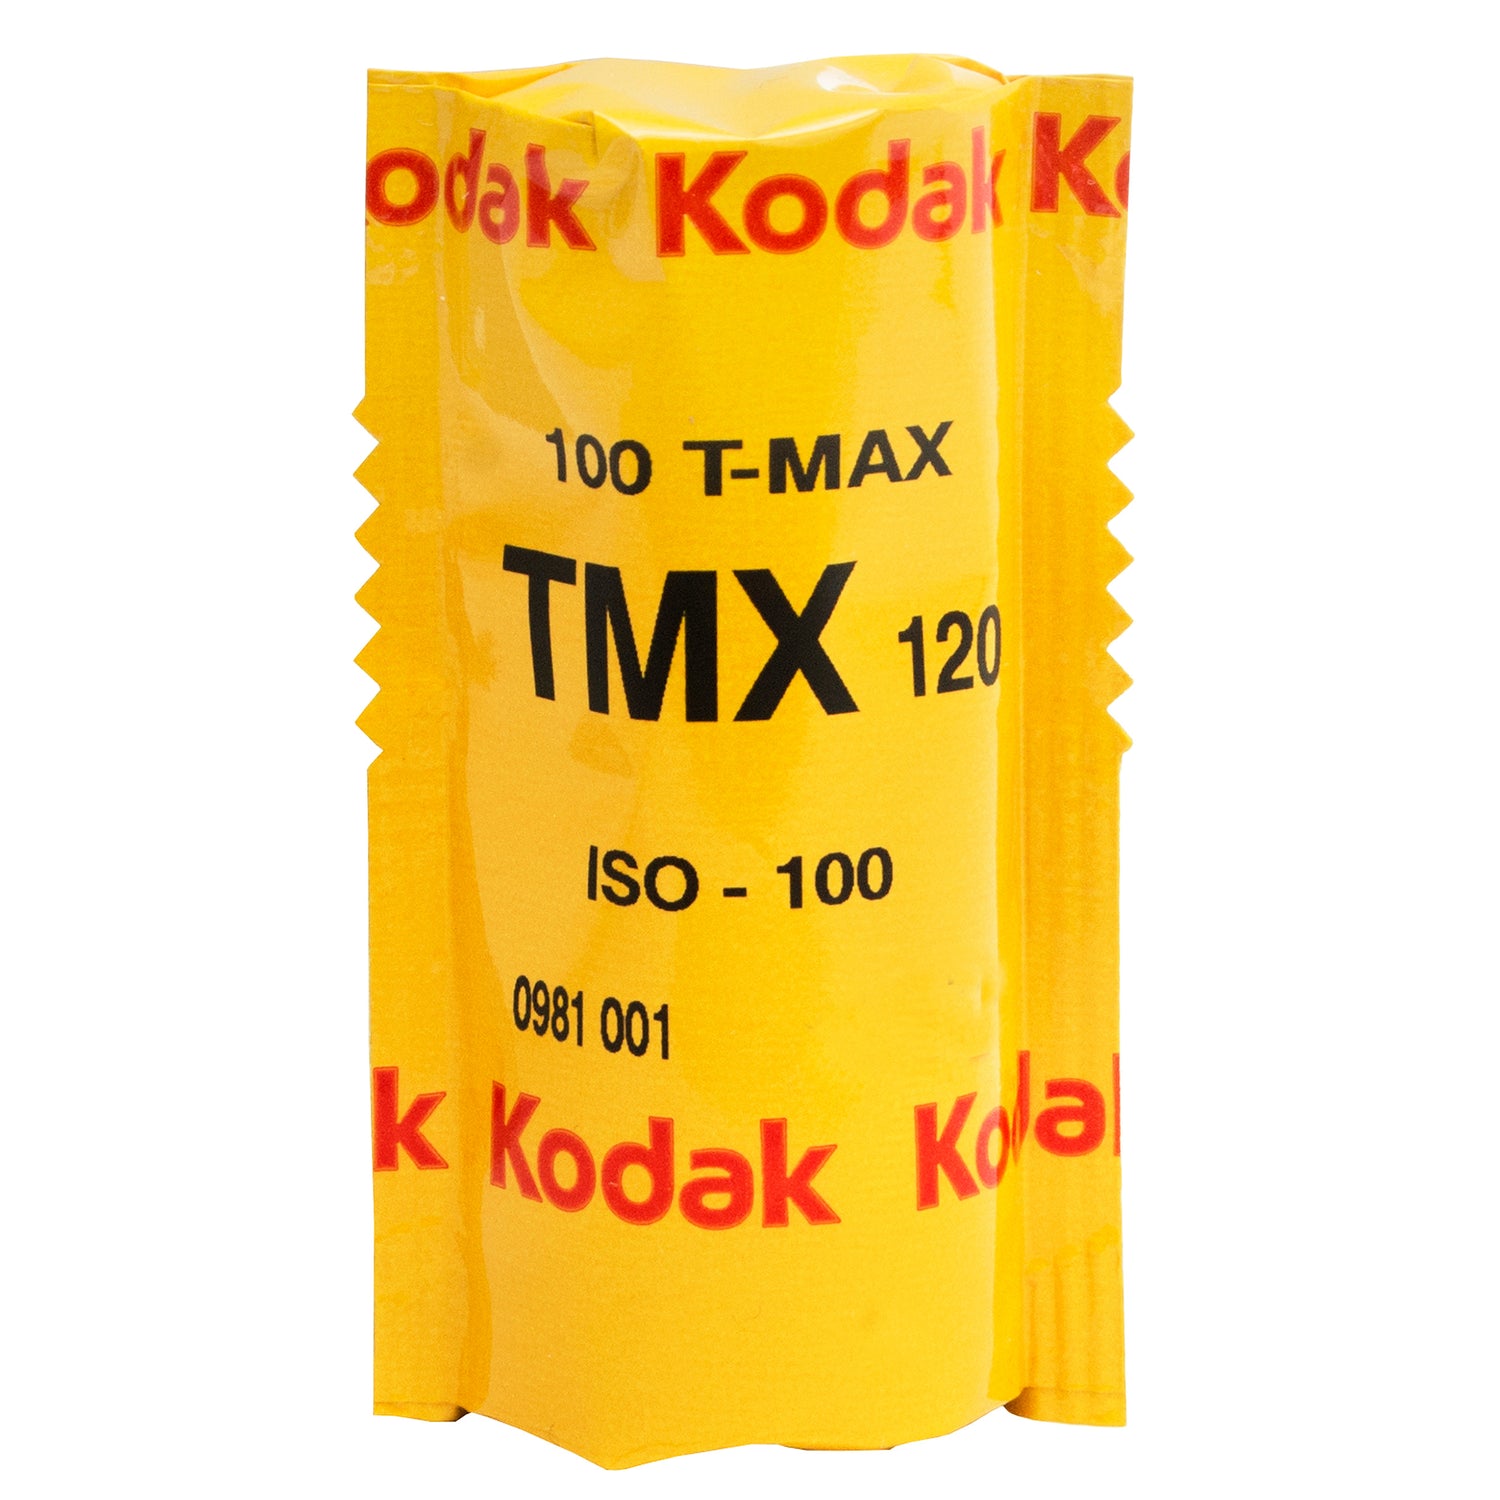 Kodak T-Max 100 - 120.